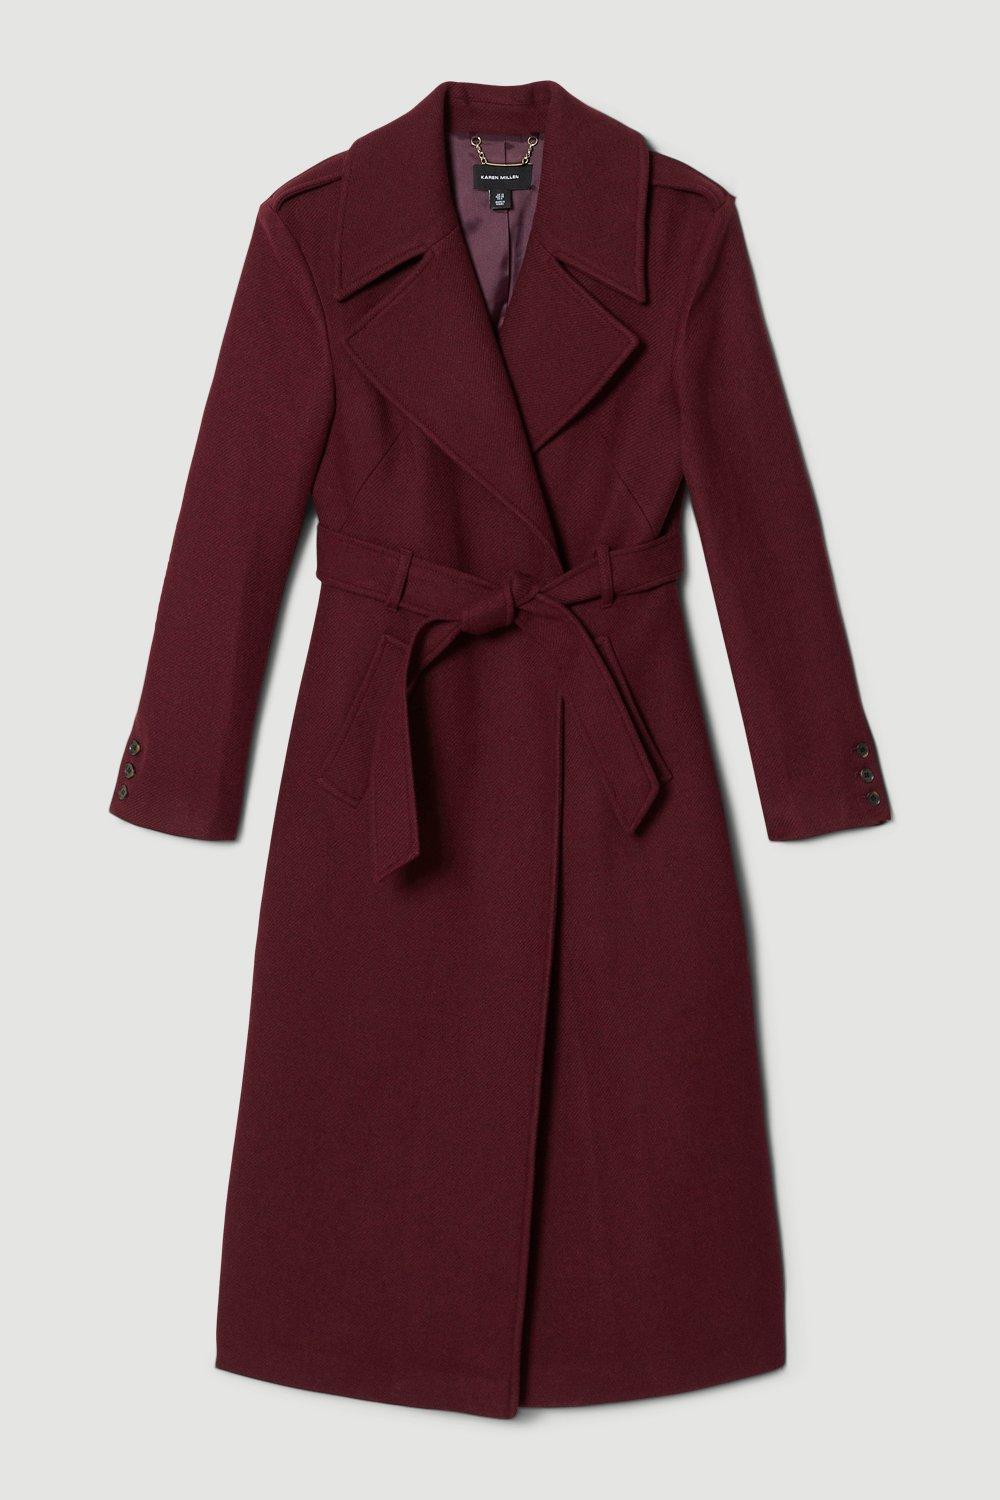 Jackets & Coats | Italian Wool Strong Shoulder Coat | KarenMillen